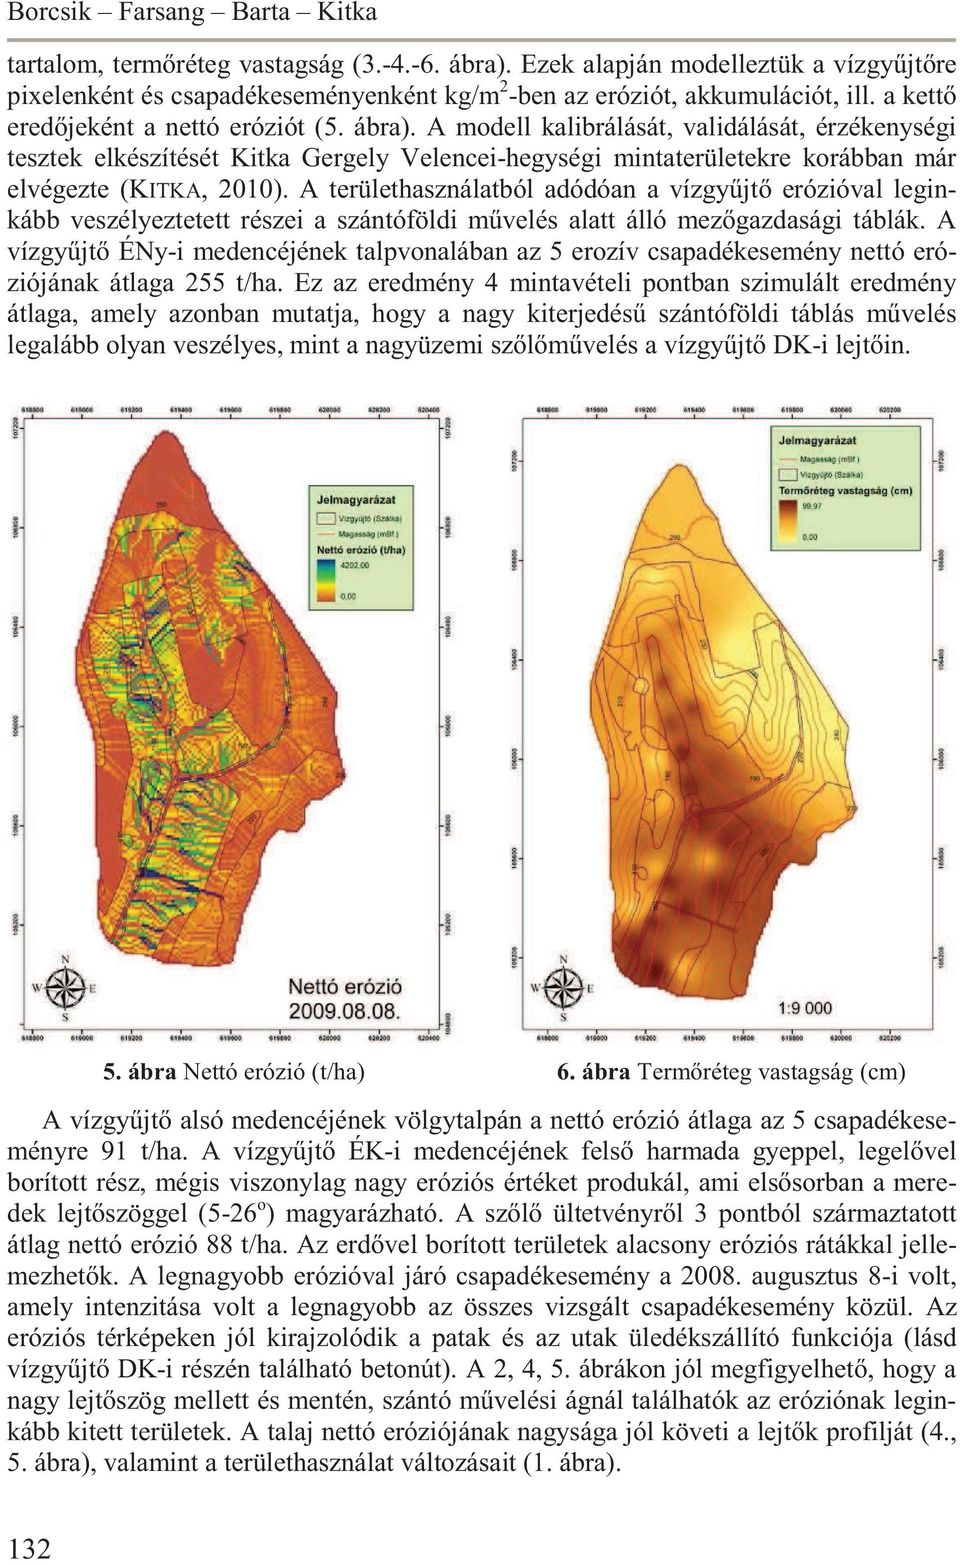 A modell kalibrálását, validálását, érzékenységi tesztek elkészítését Kitka Gergely Velencei-hegységi mintaterületekre korábban már elvégezte (KITKA, 2010).